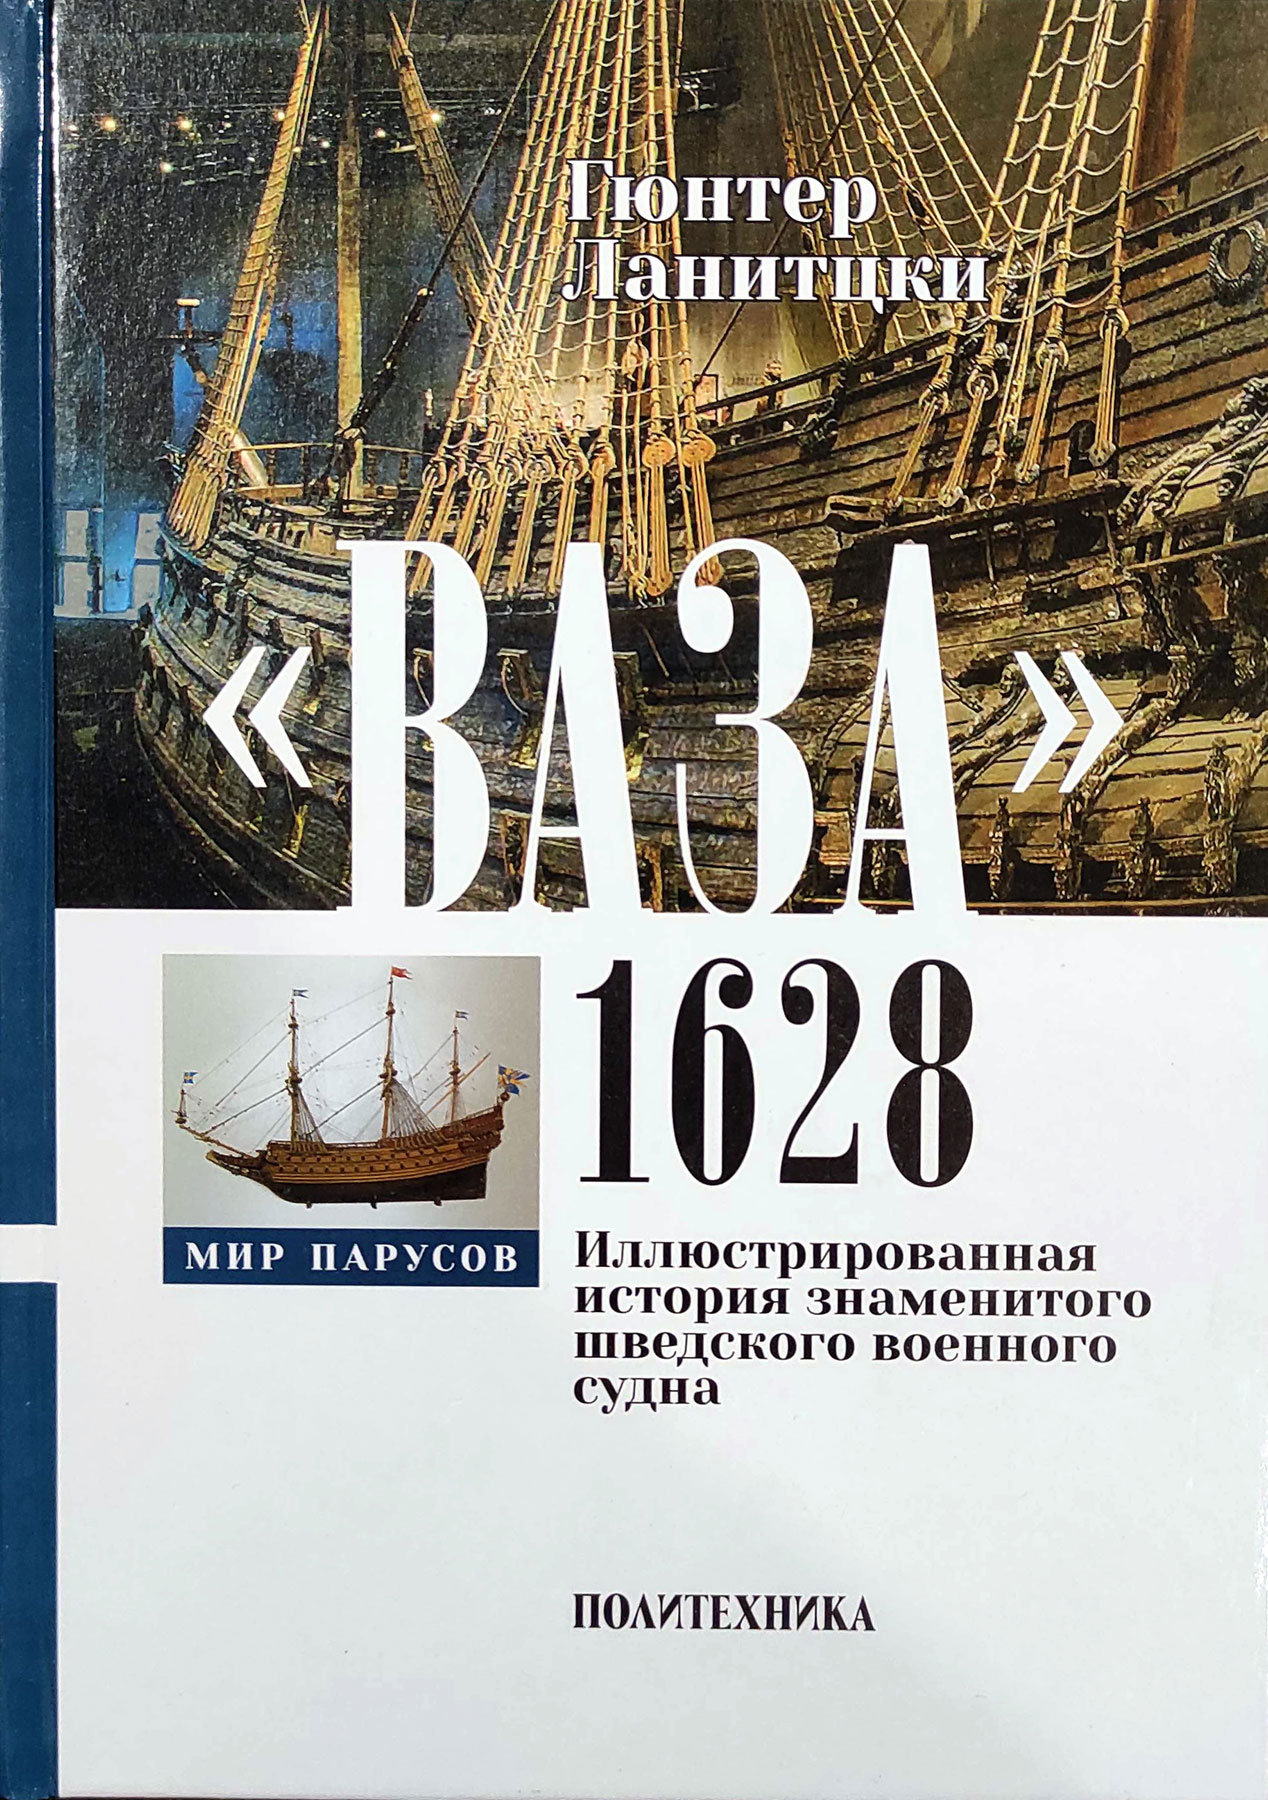 "Ваза" 1628. Иллюстрированная история знаменитого шведского военного судна